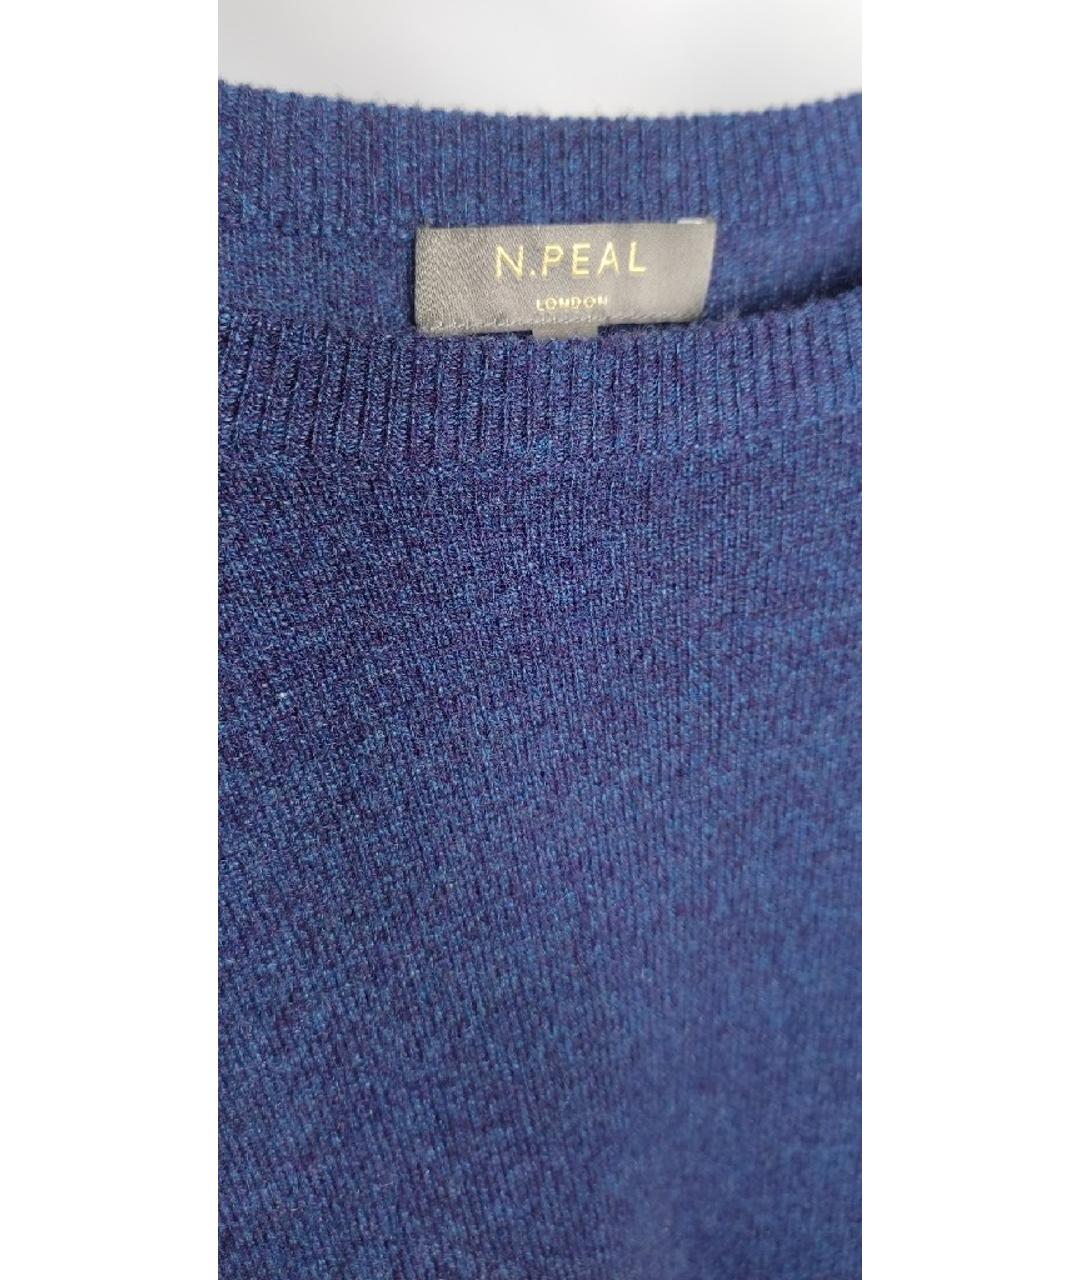 N.PEAL Синий кашемировый джемпер / свитер, фото 3